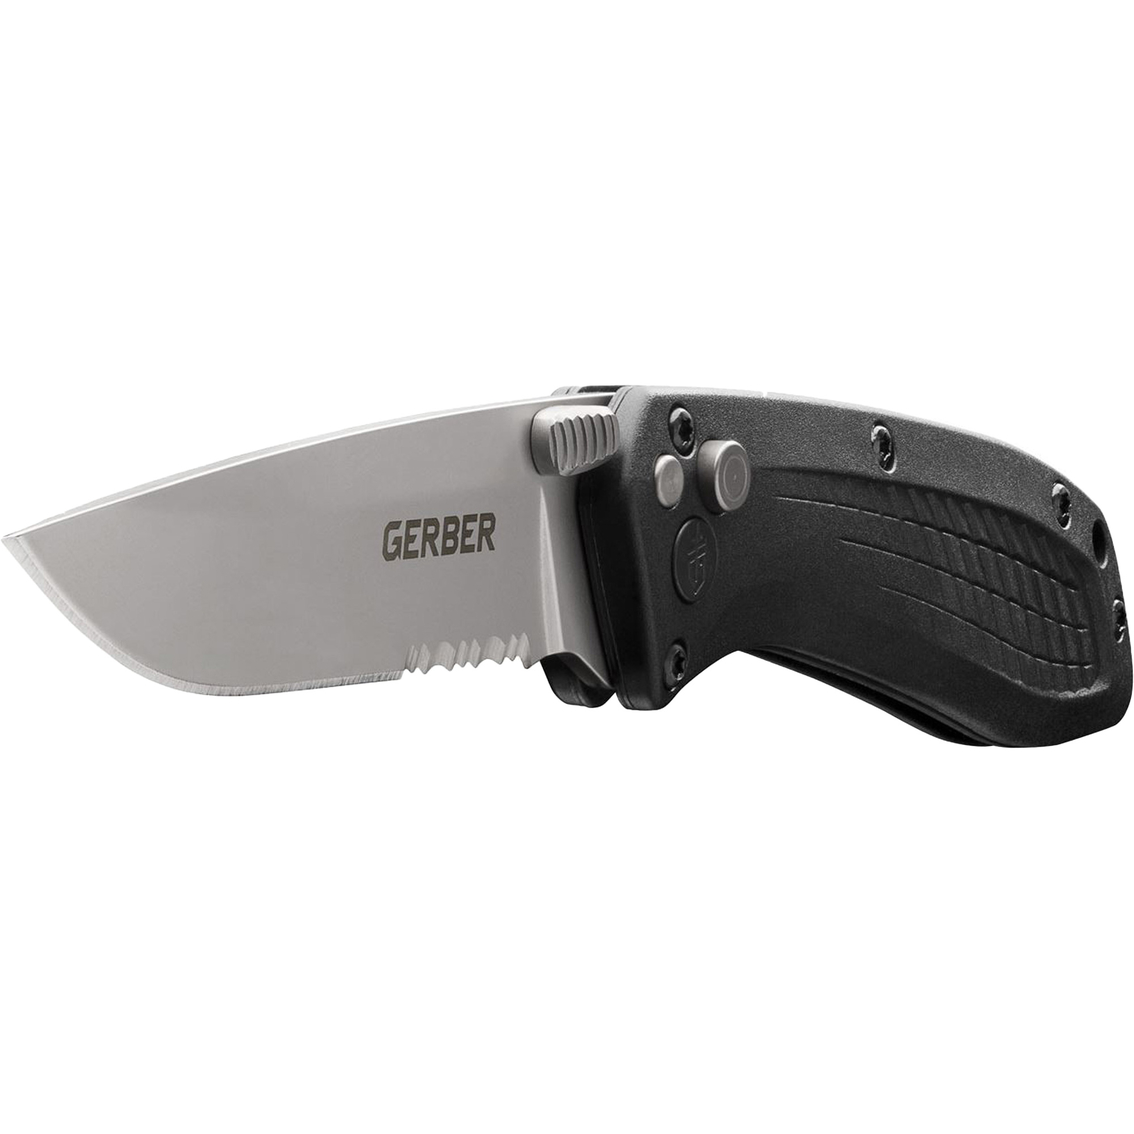 Gerber US-Assist Pocket Clip Folding Knife - Image 2 of 3